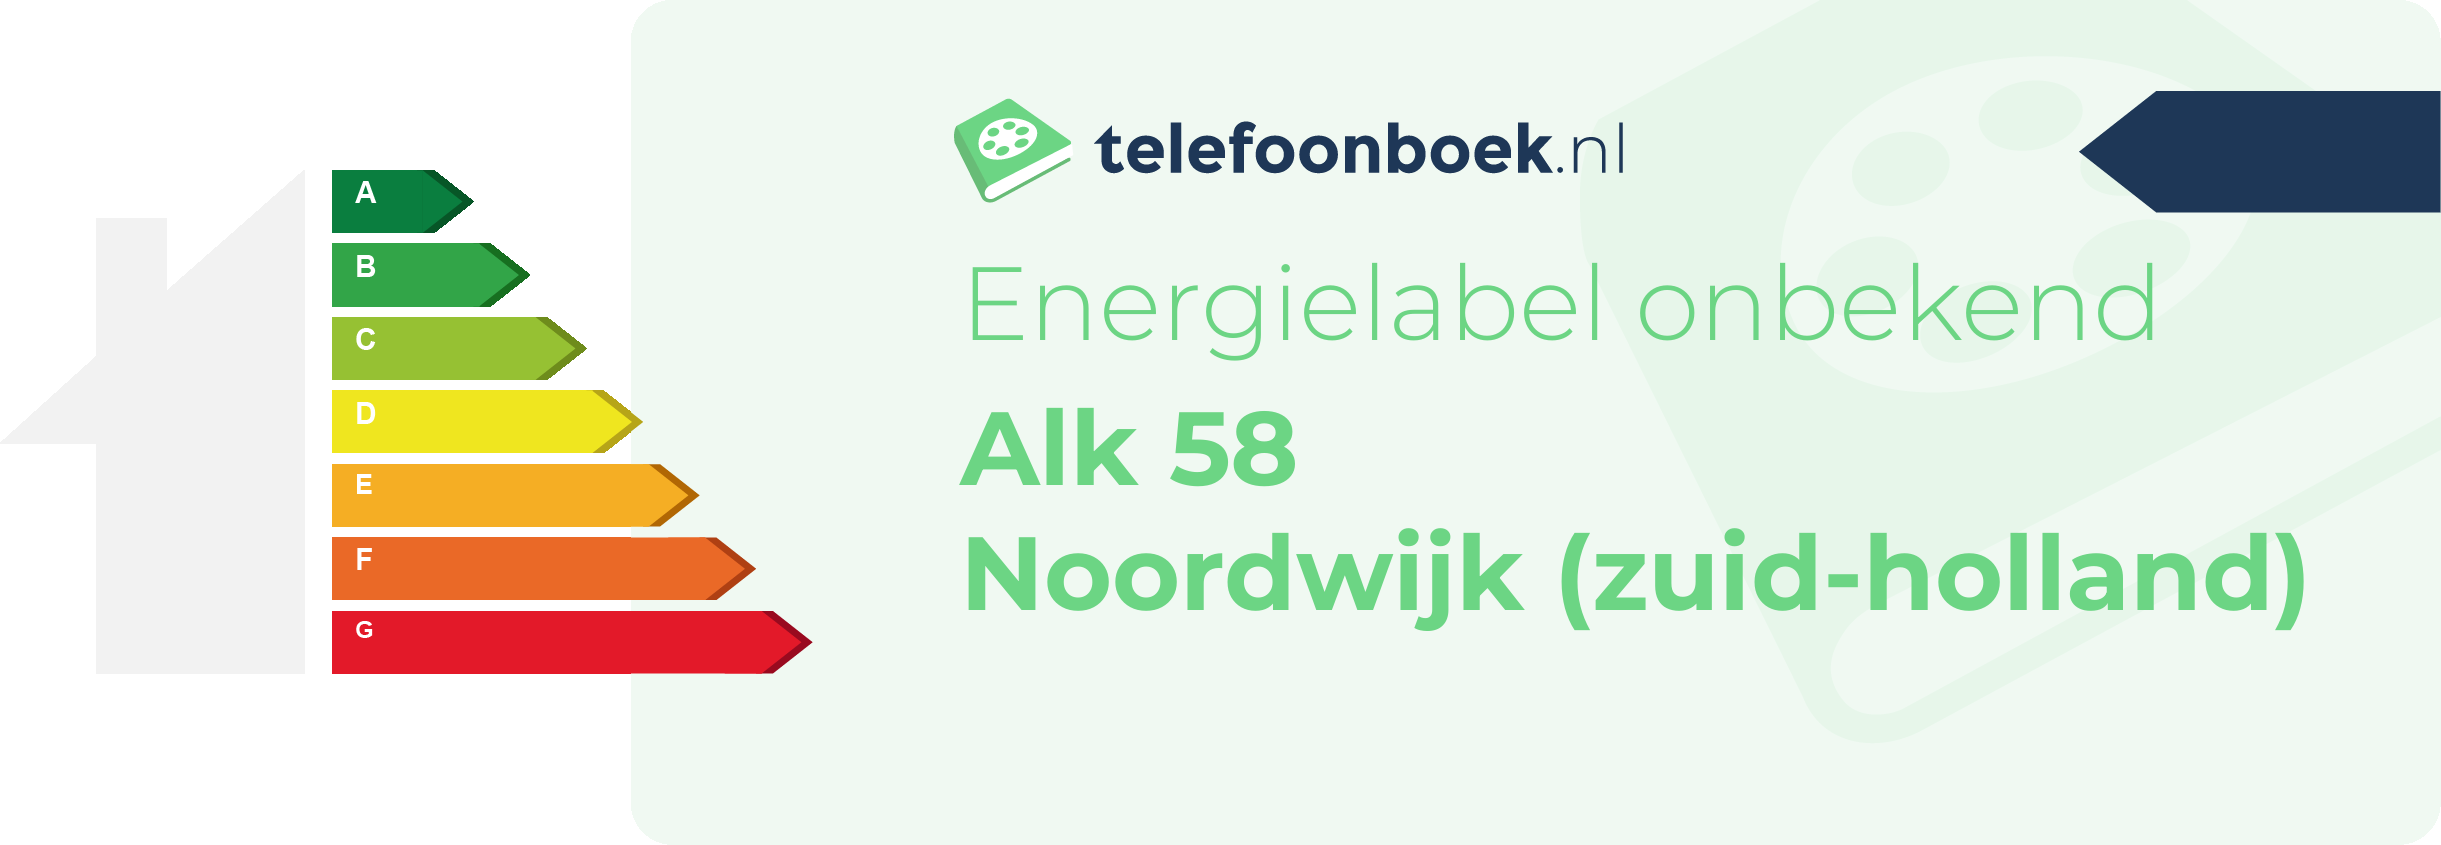 Energielabel Alk 58 Noordwijk (Zuid-Holland)